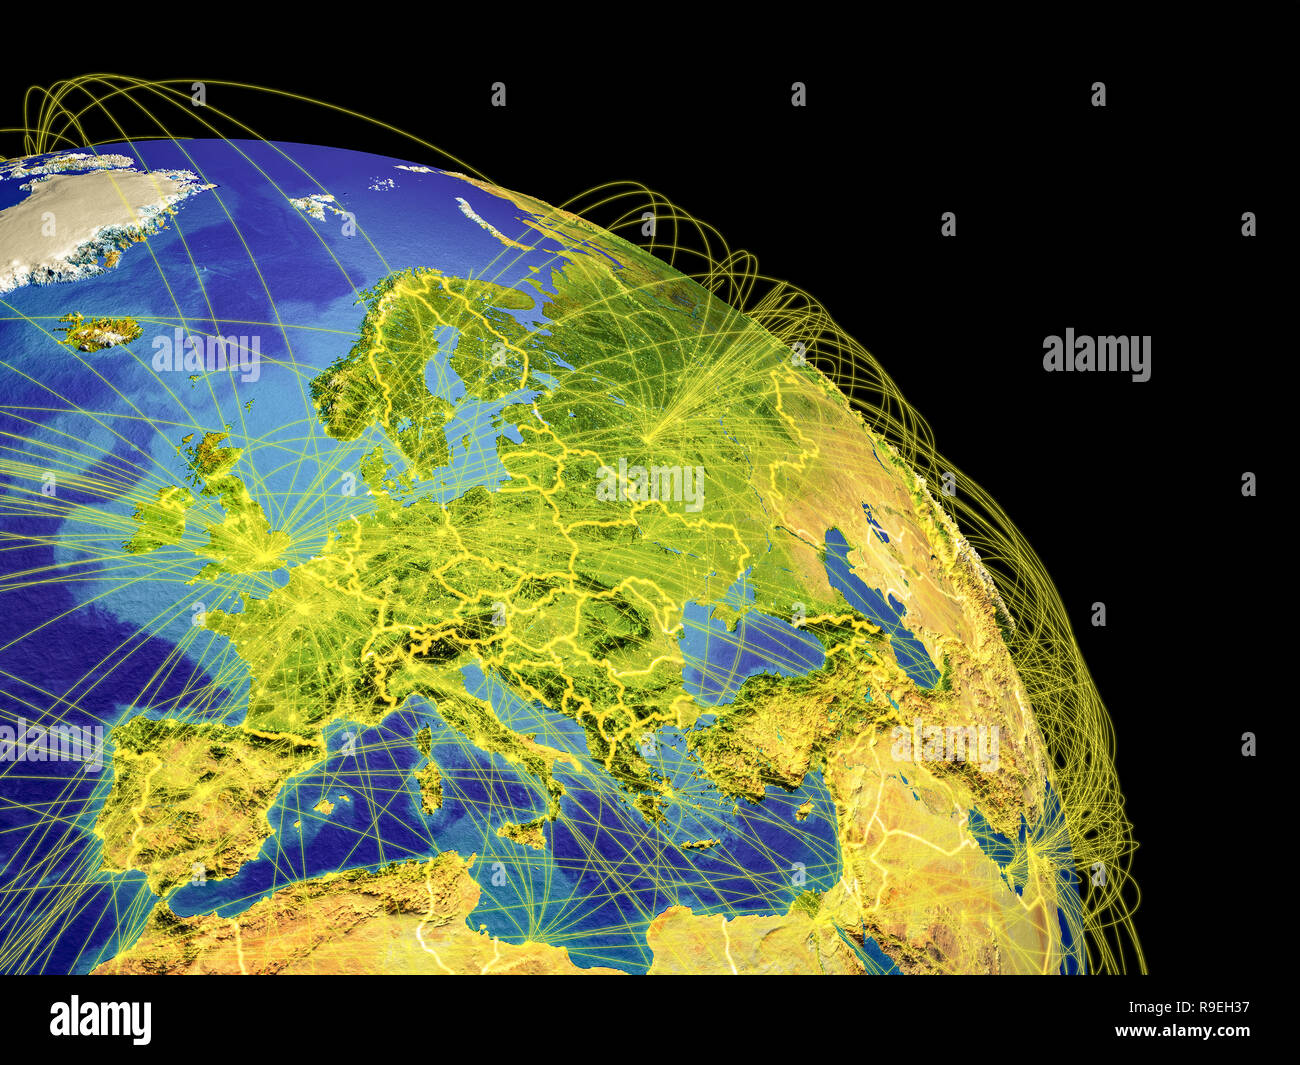 Auflösung und – Europa -Bildmaterial hoher Alamy weltraum -Fotos aus in